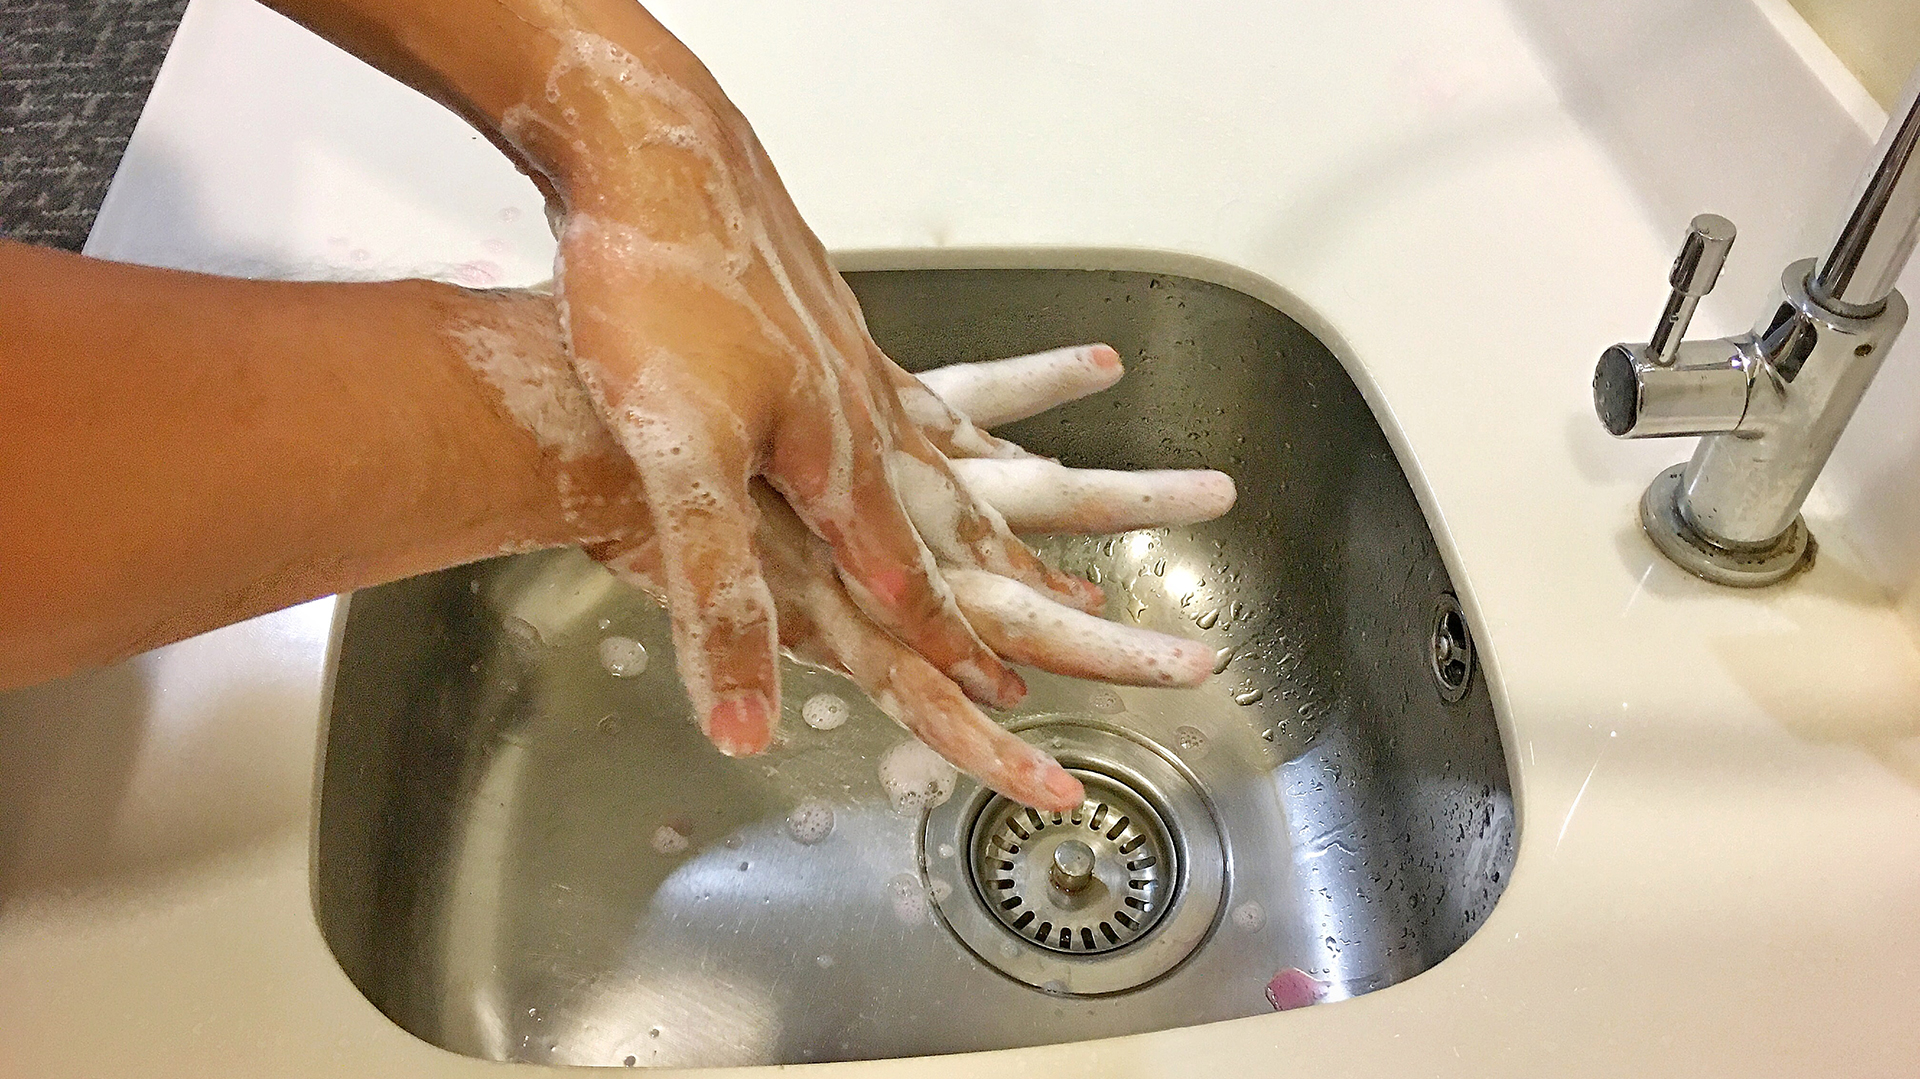 Handwashing at a sink